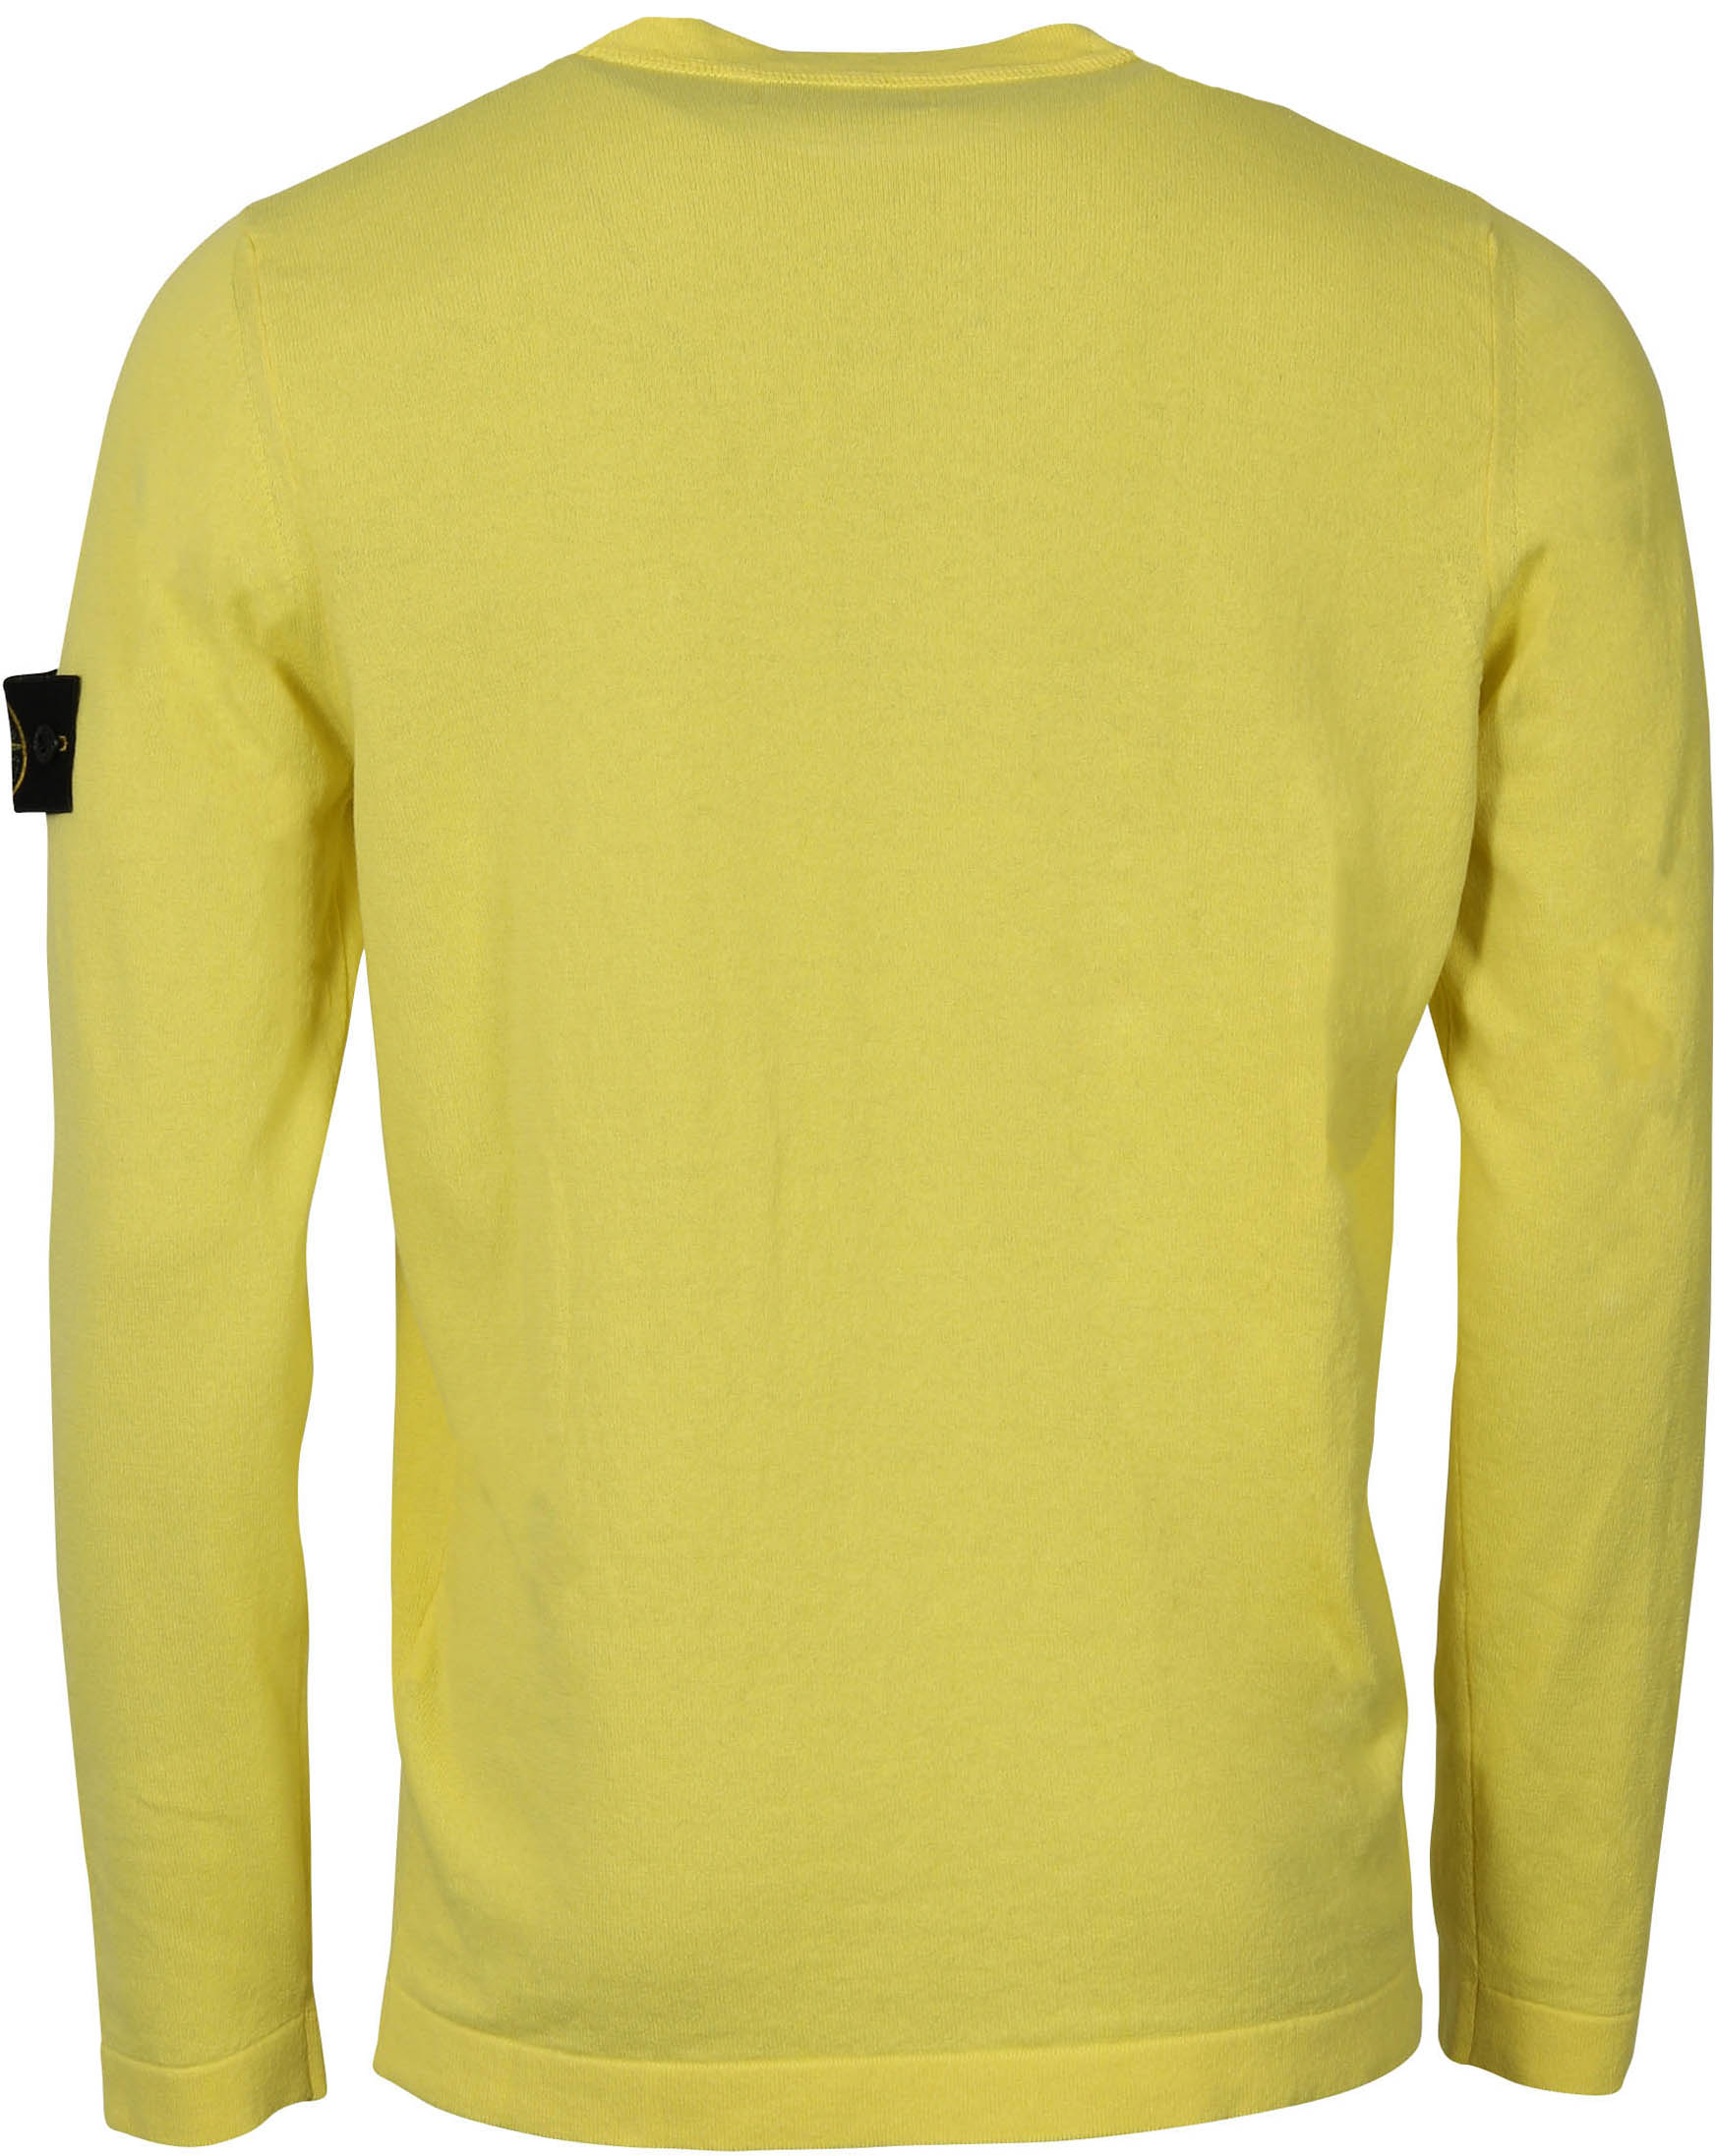 Stone Island Knit Sweater Yellow M